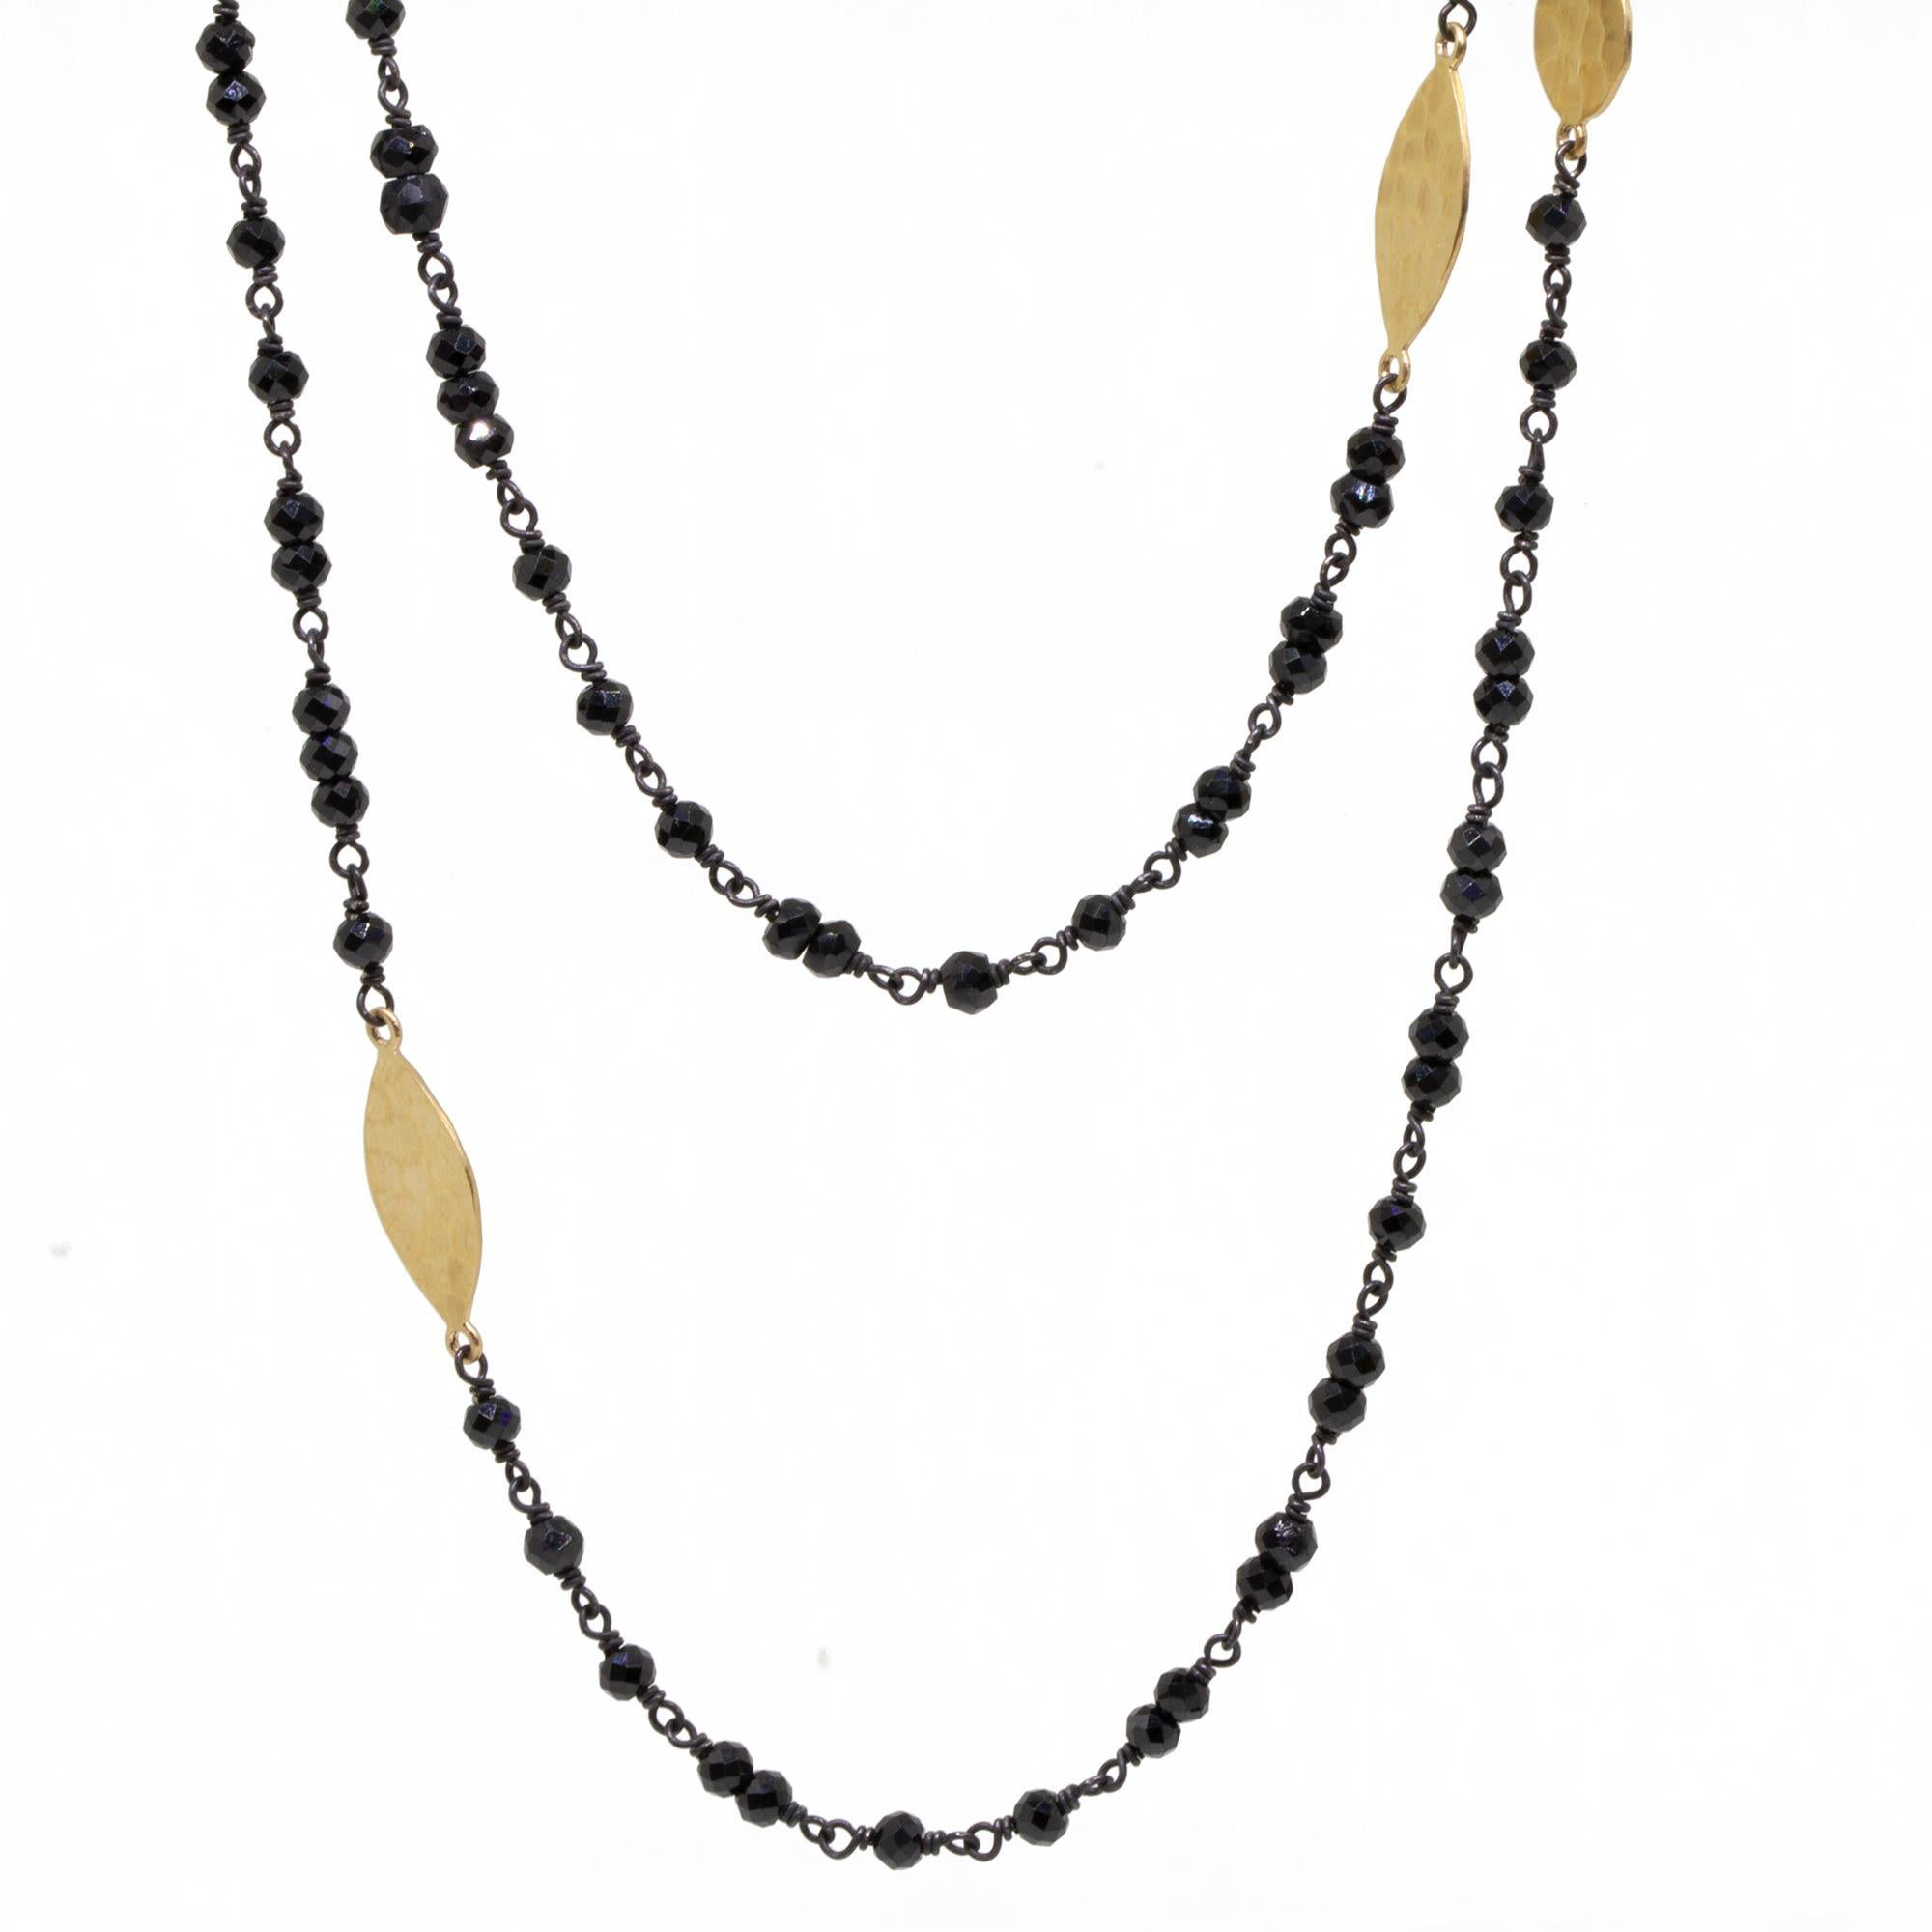 Die Spectrum Gold & Oxidized Halskette mit ihren strukturierten goldenen Marquise-Formen an Stationen entlang eines Strangs schwarzer Spinell-Perlen hat die perfekte Länge, um sie lang und schwungvoll zu tragen oder sie für einen herrlich